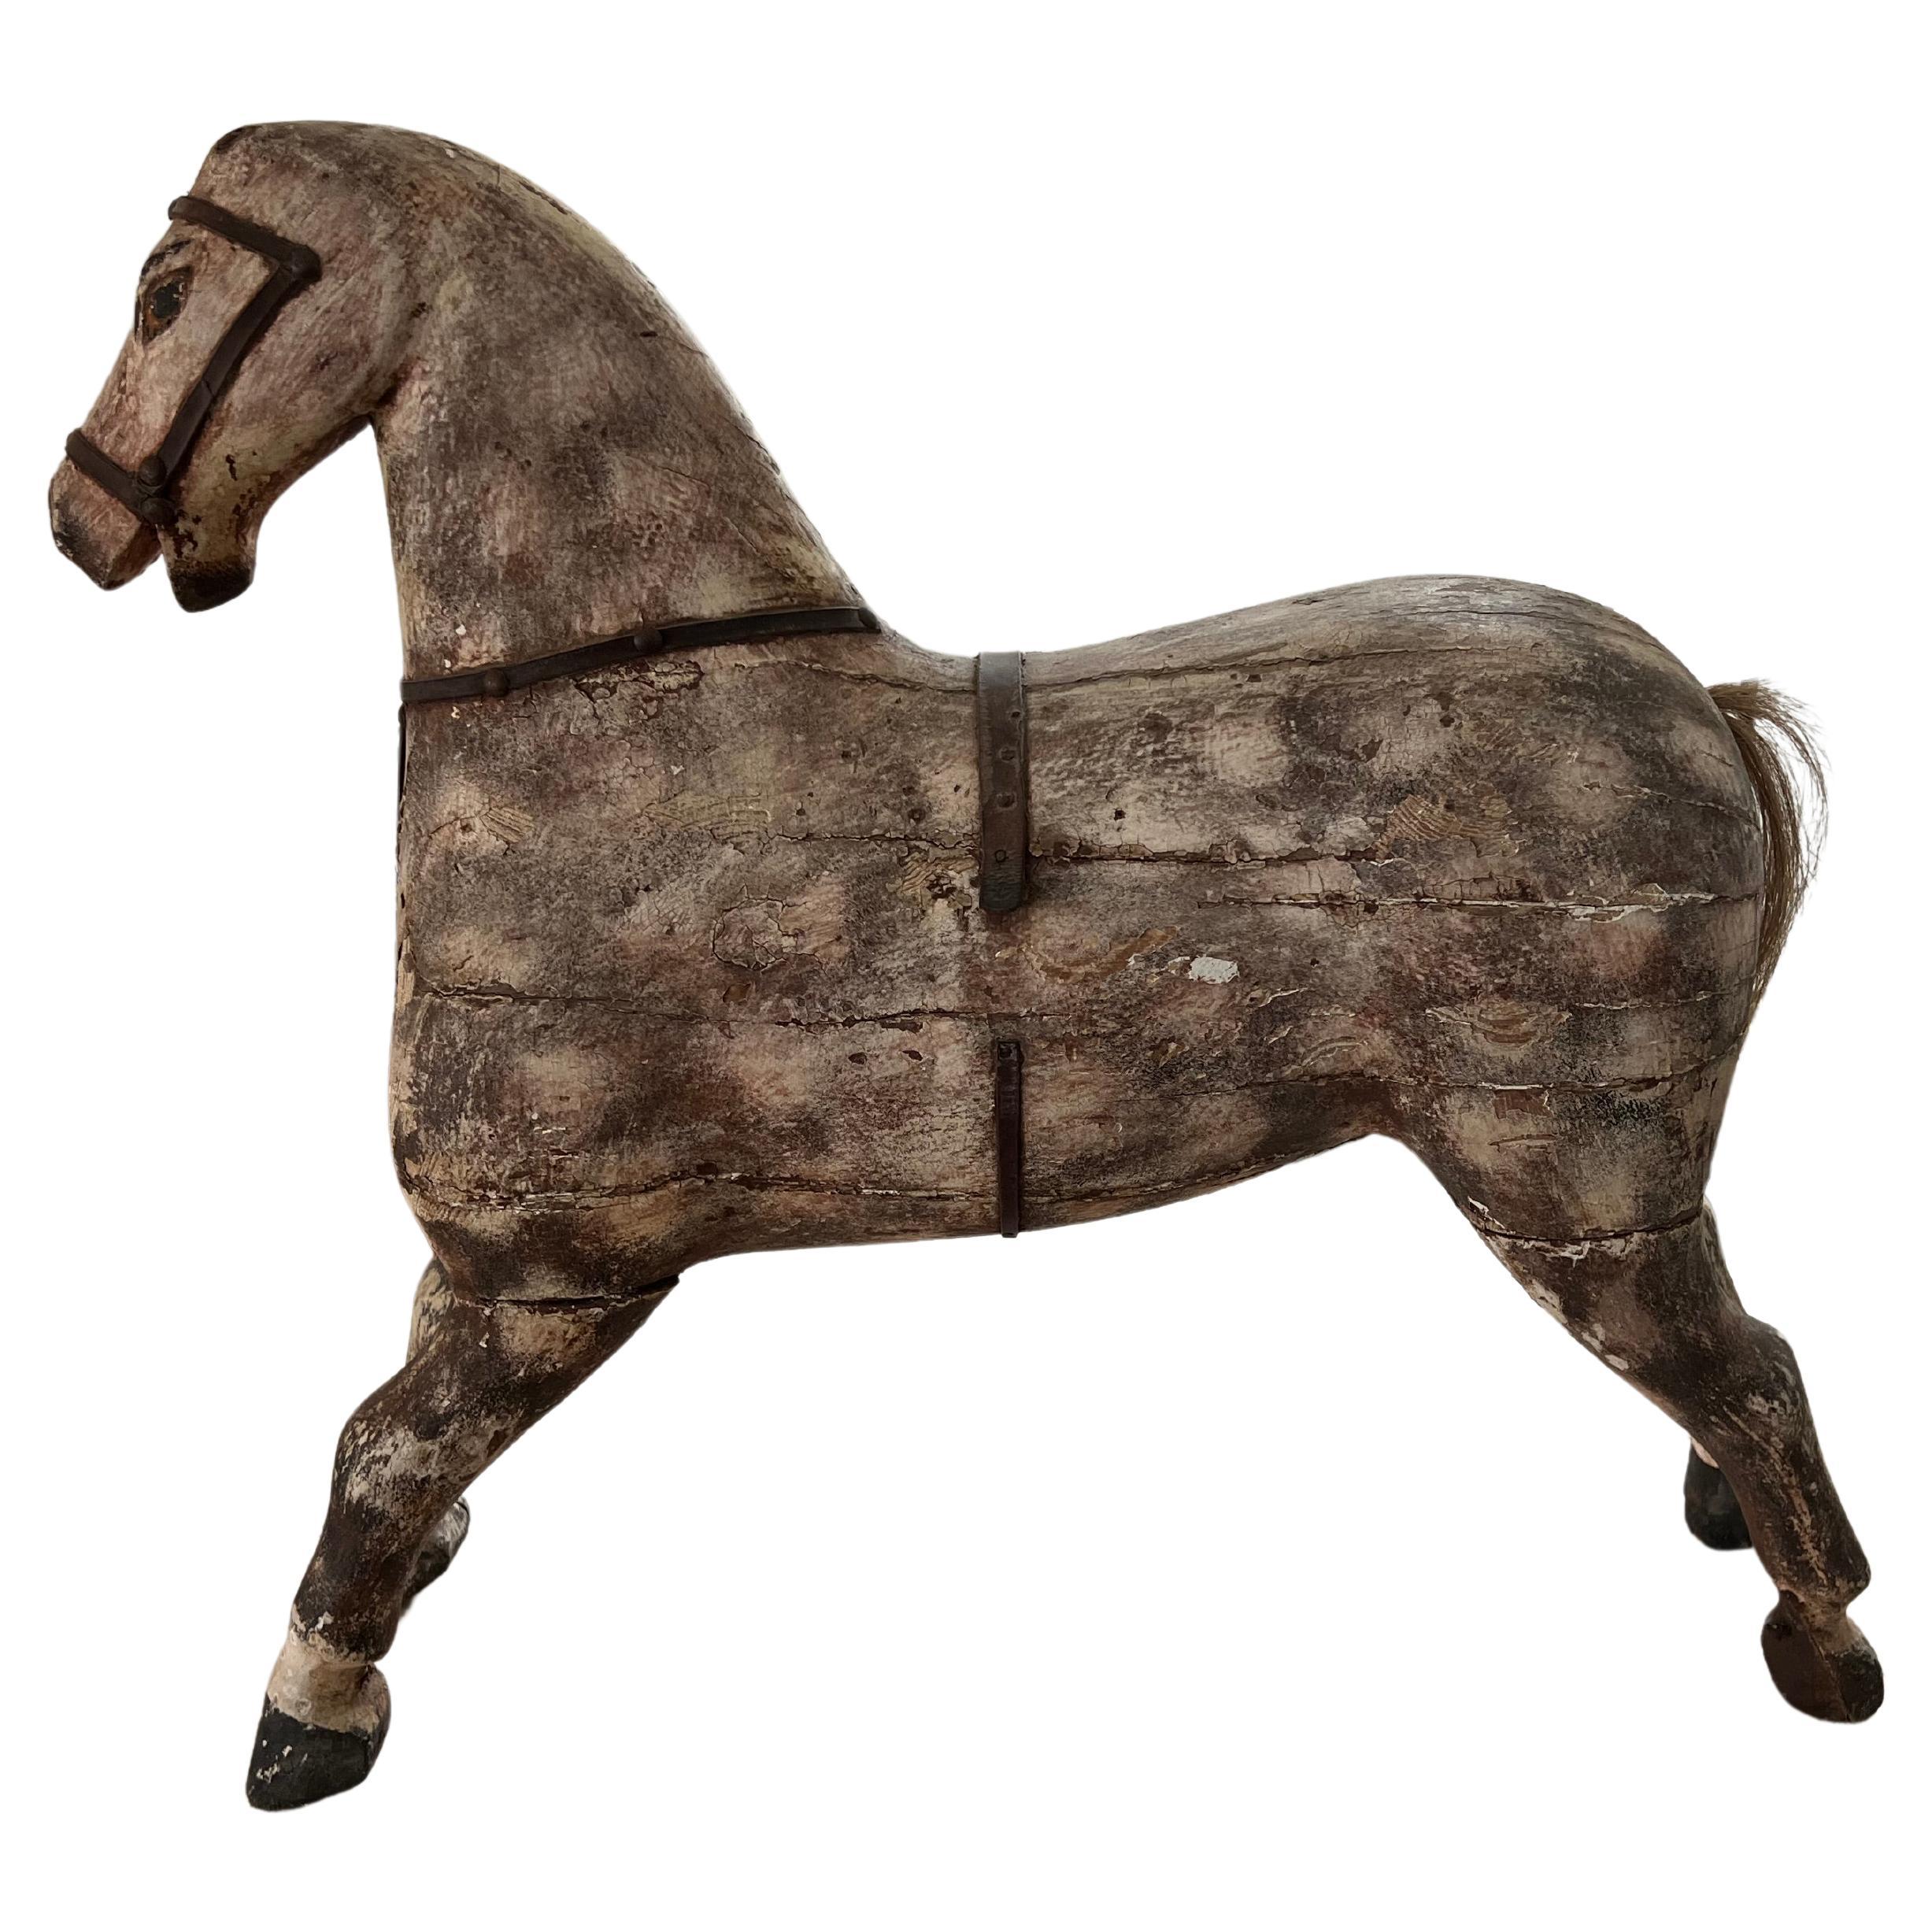 Cavallo giocattolo austriaco del 1930